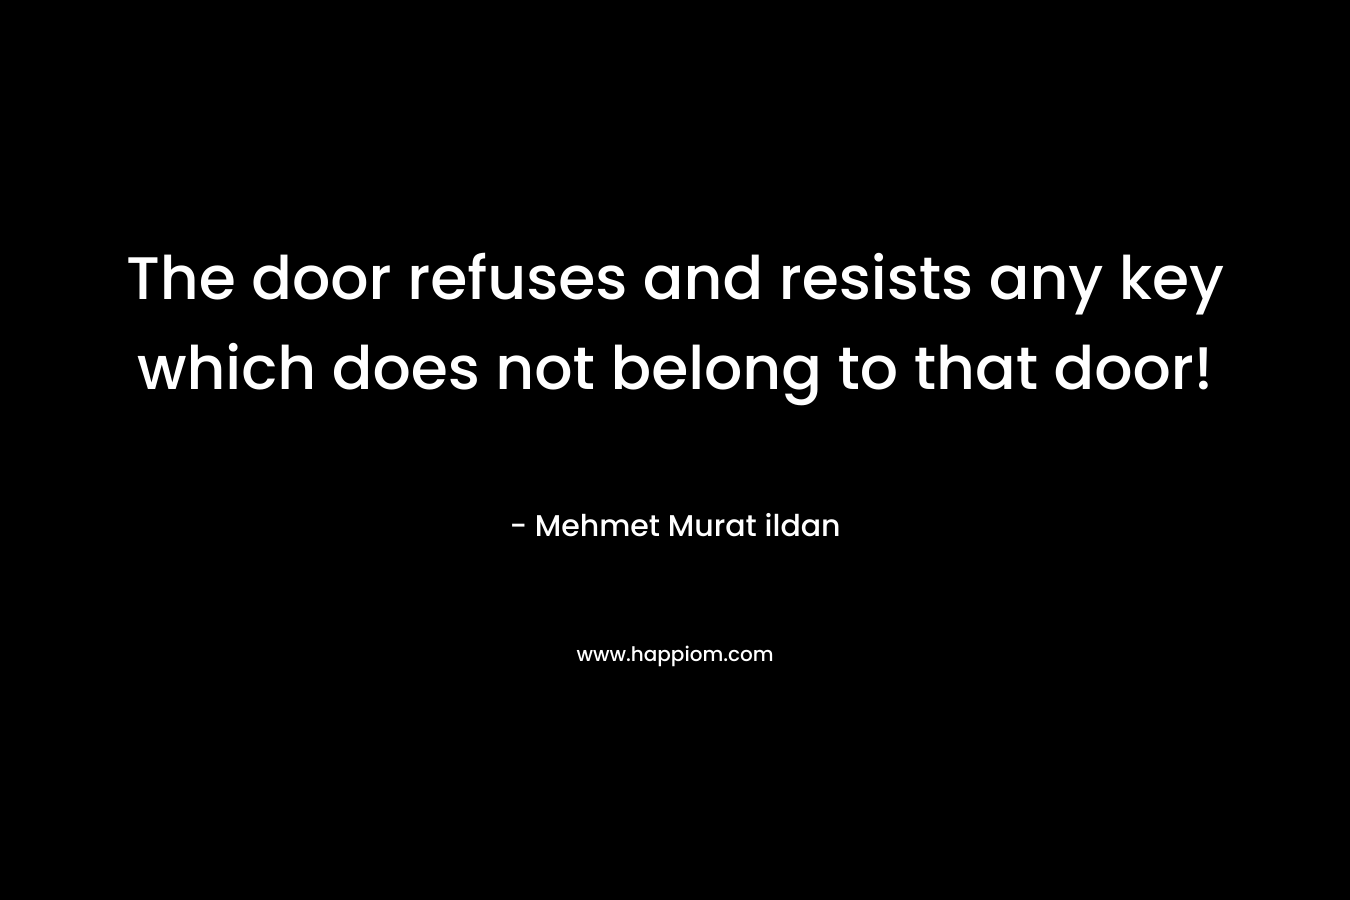 The door refuses and resists any key which does not belong to that door! – Mehmet Murat ildan